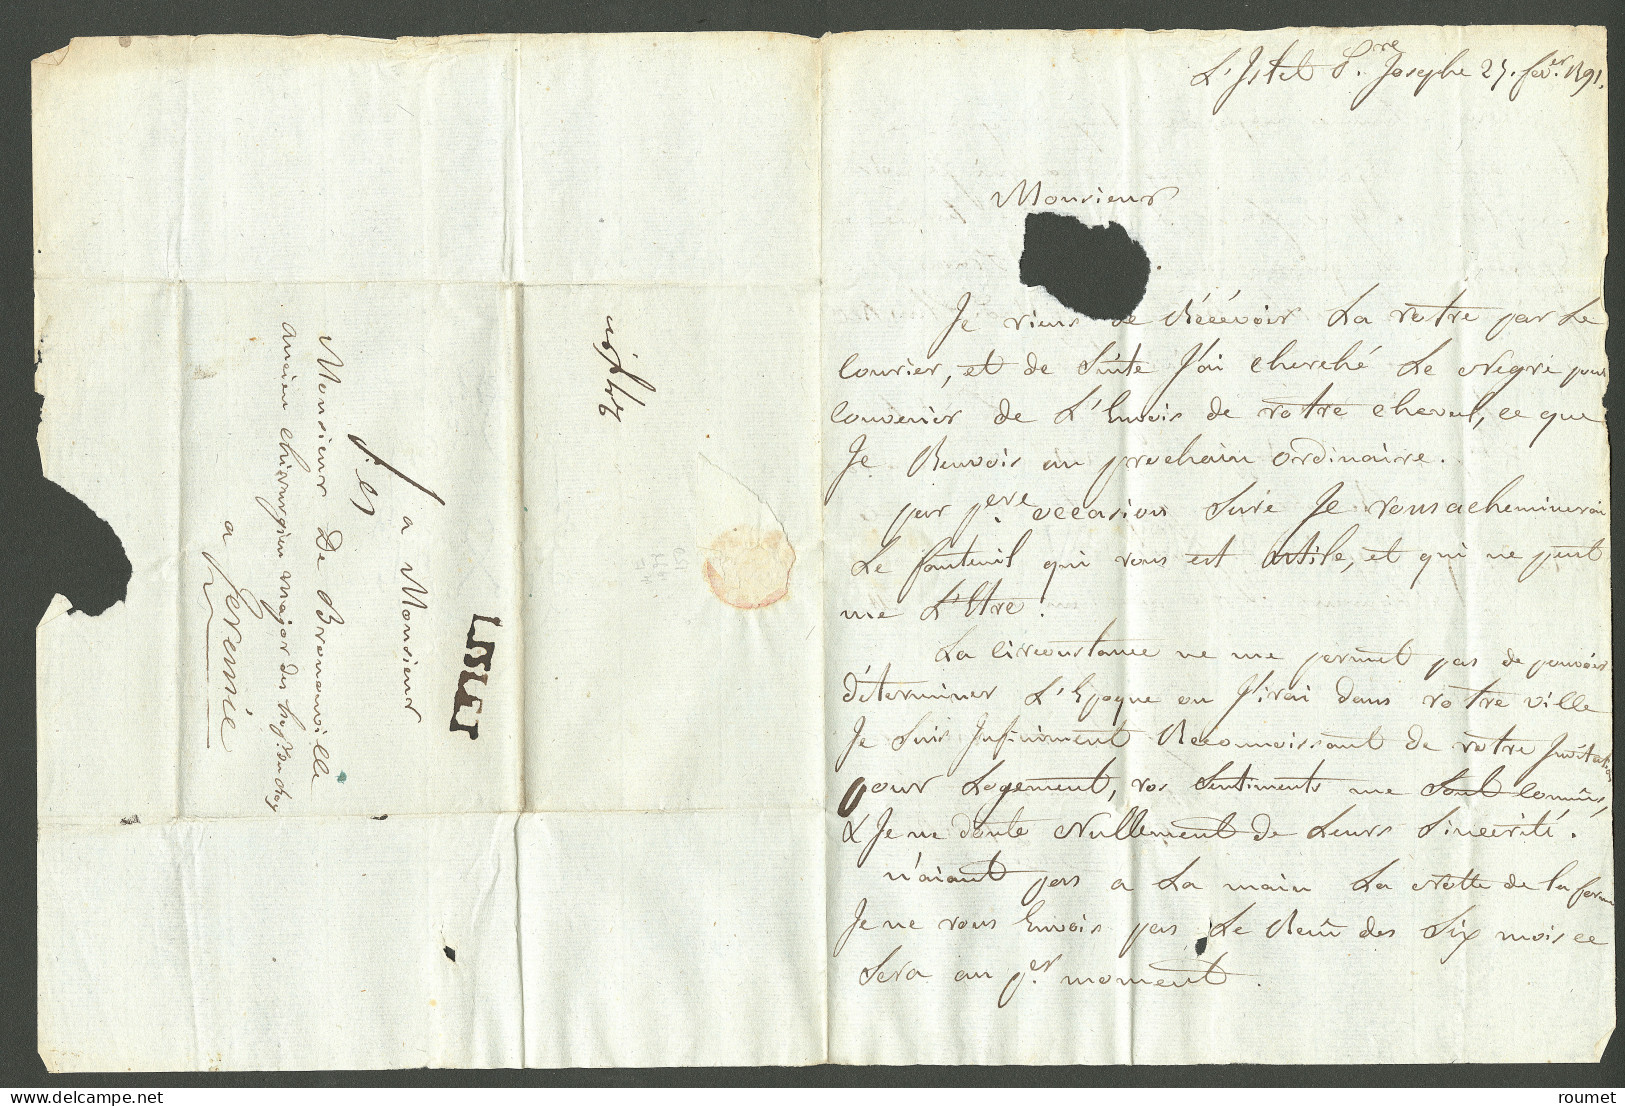 Lettre L'islet (Jamet N°2). Lettre Avec Texte Daté L'Islet St Joseph Le 25 Février 1791, Pour Jérémie. - TB. - R - Haïti